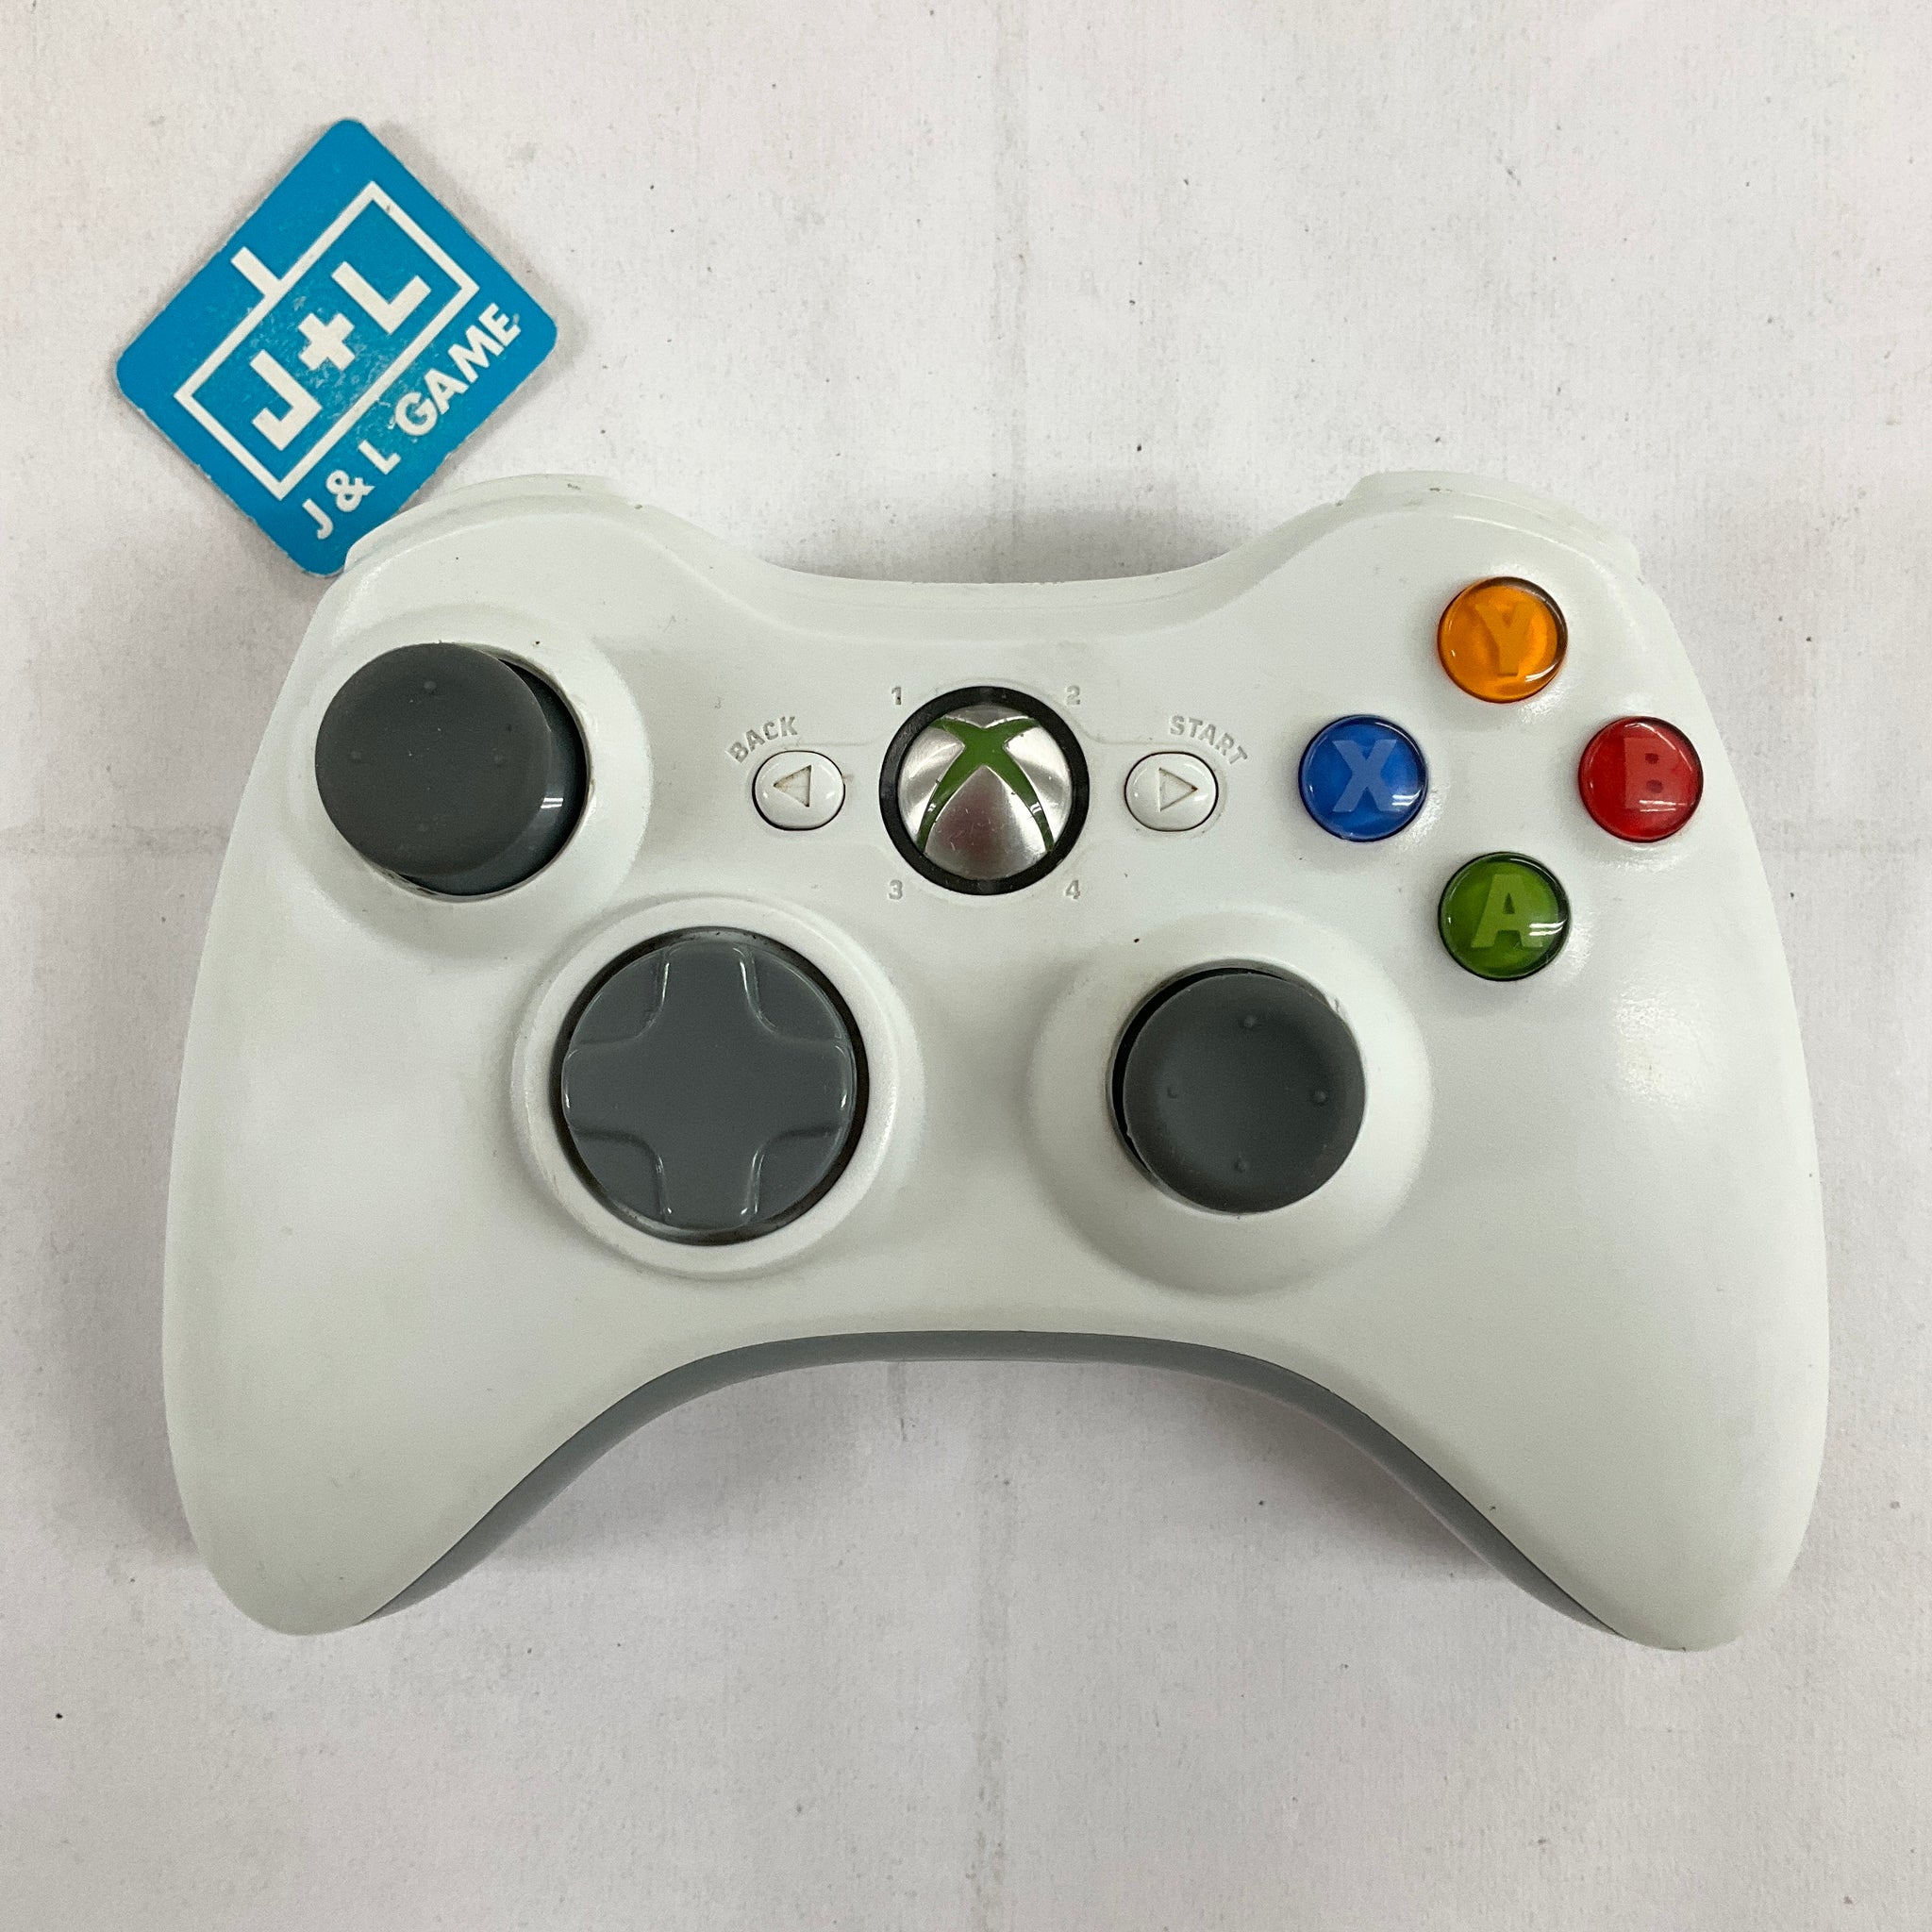 Microsoft Xbox 360 Wireless Controller (White) - Xbox 360 [Pre-Owned] Accessories Microsoft   